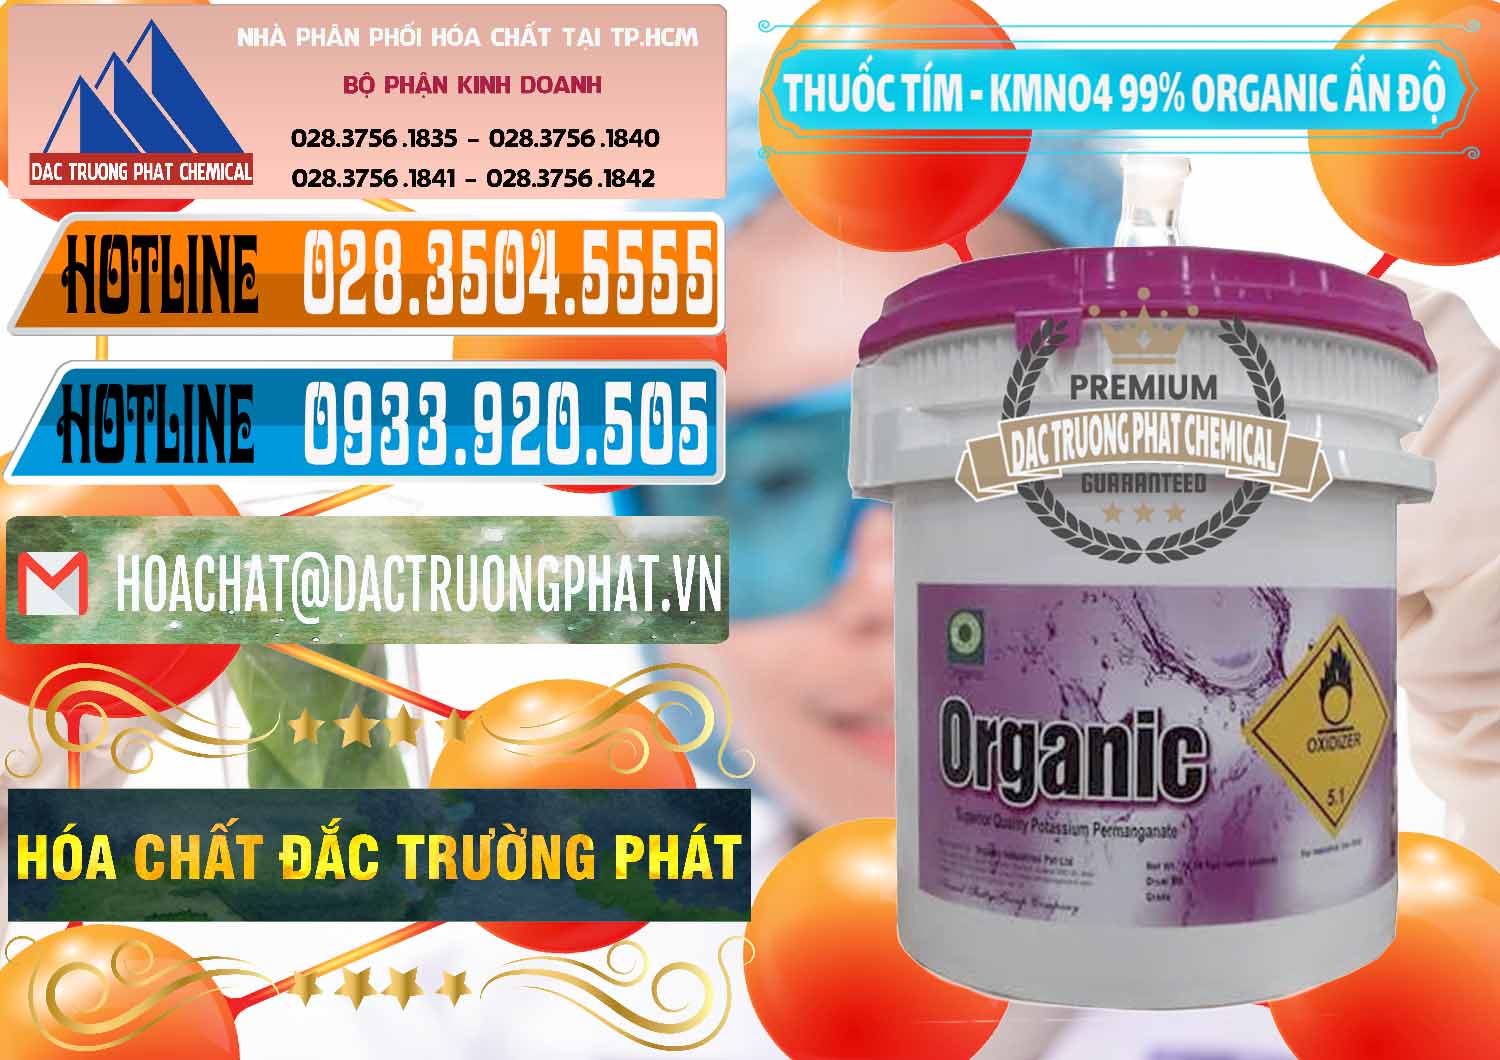 Cty chuyên kinh doanh ( bán ) Thuốc Tím - KMNO4 99% Organic Ấn Độ India - 0216 - Cty cung cấp và kinh doanh hóa chất tại TP.HCM - stmp.net